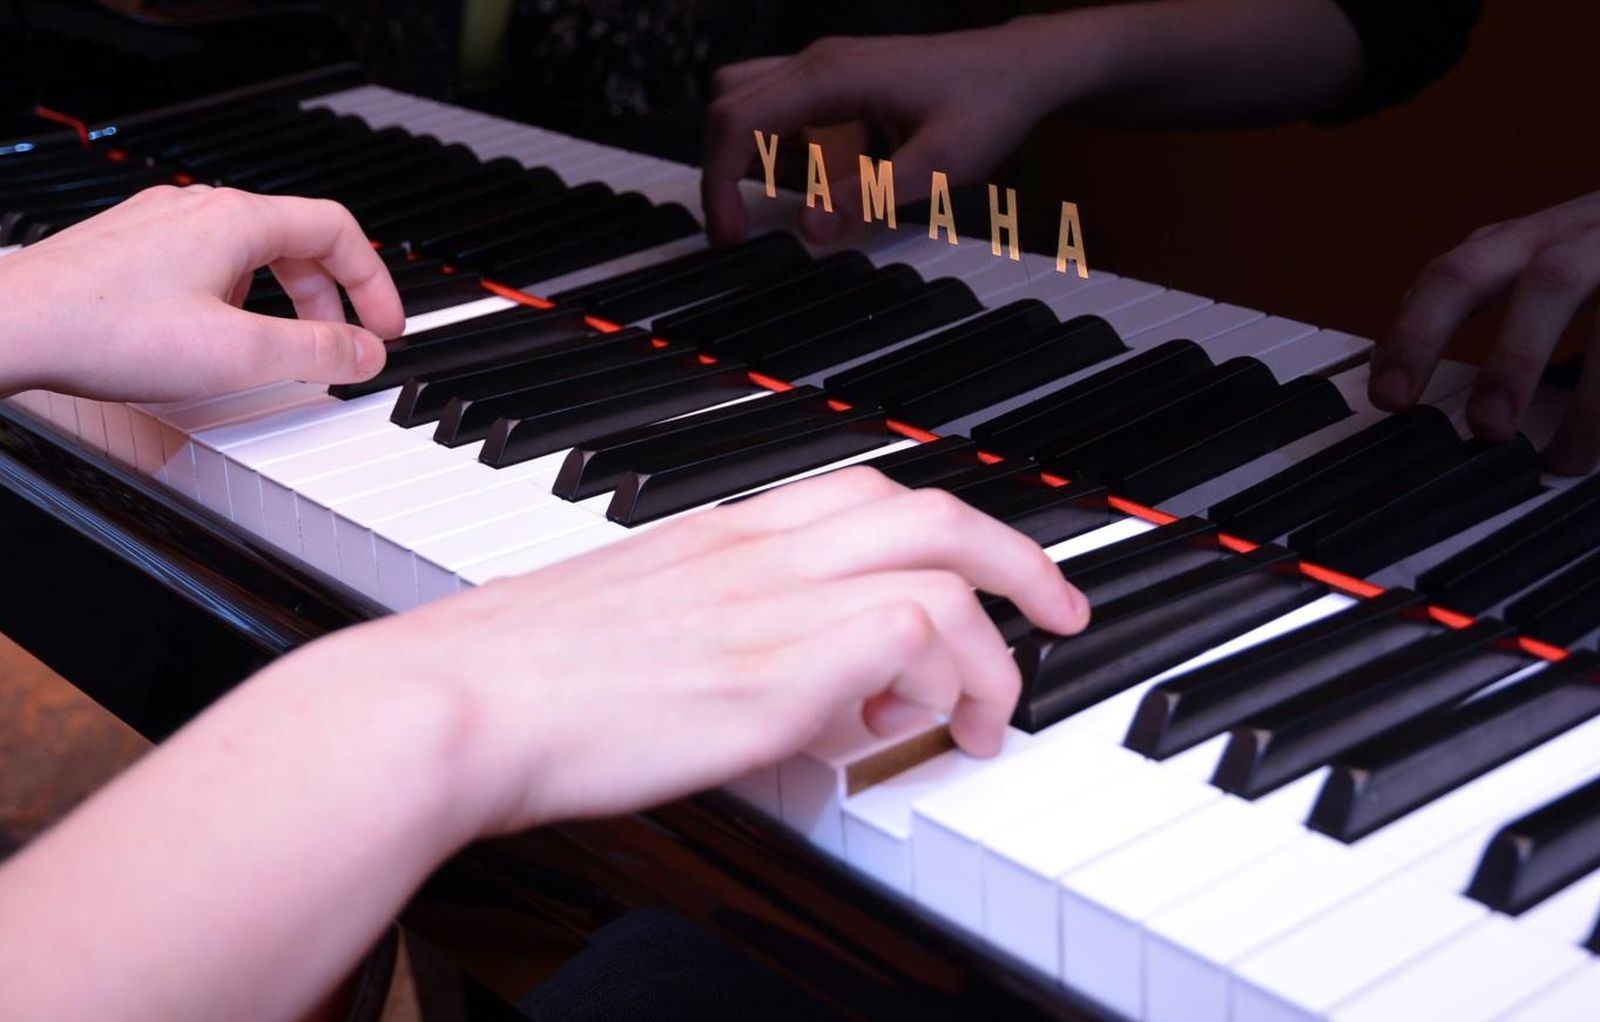 12.03.2015., Bjelovar - Ucenje sviranja klavira. 
Photo: Damir Spehar/PIXSELL